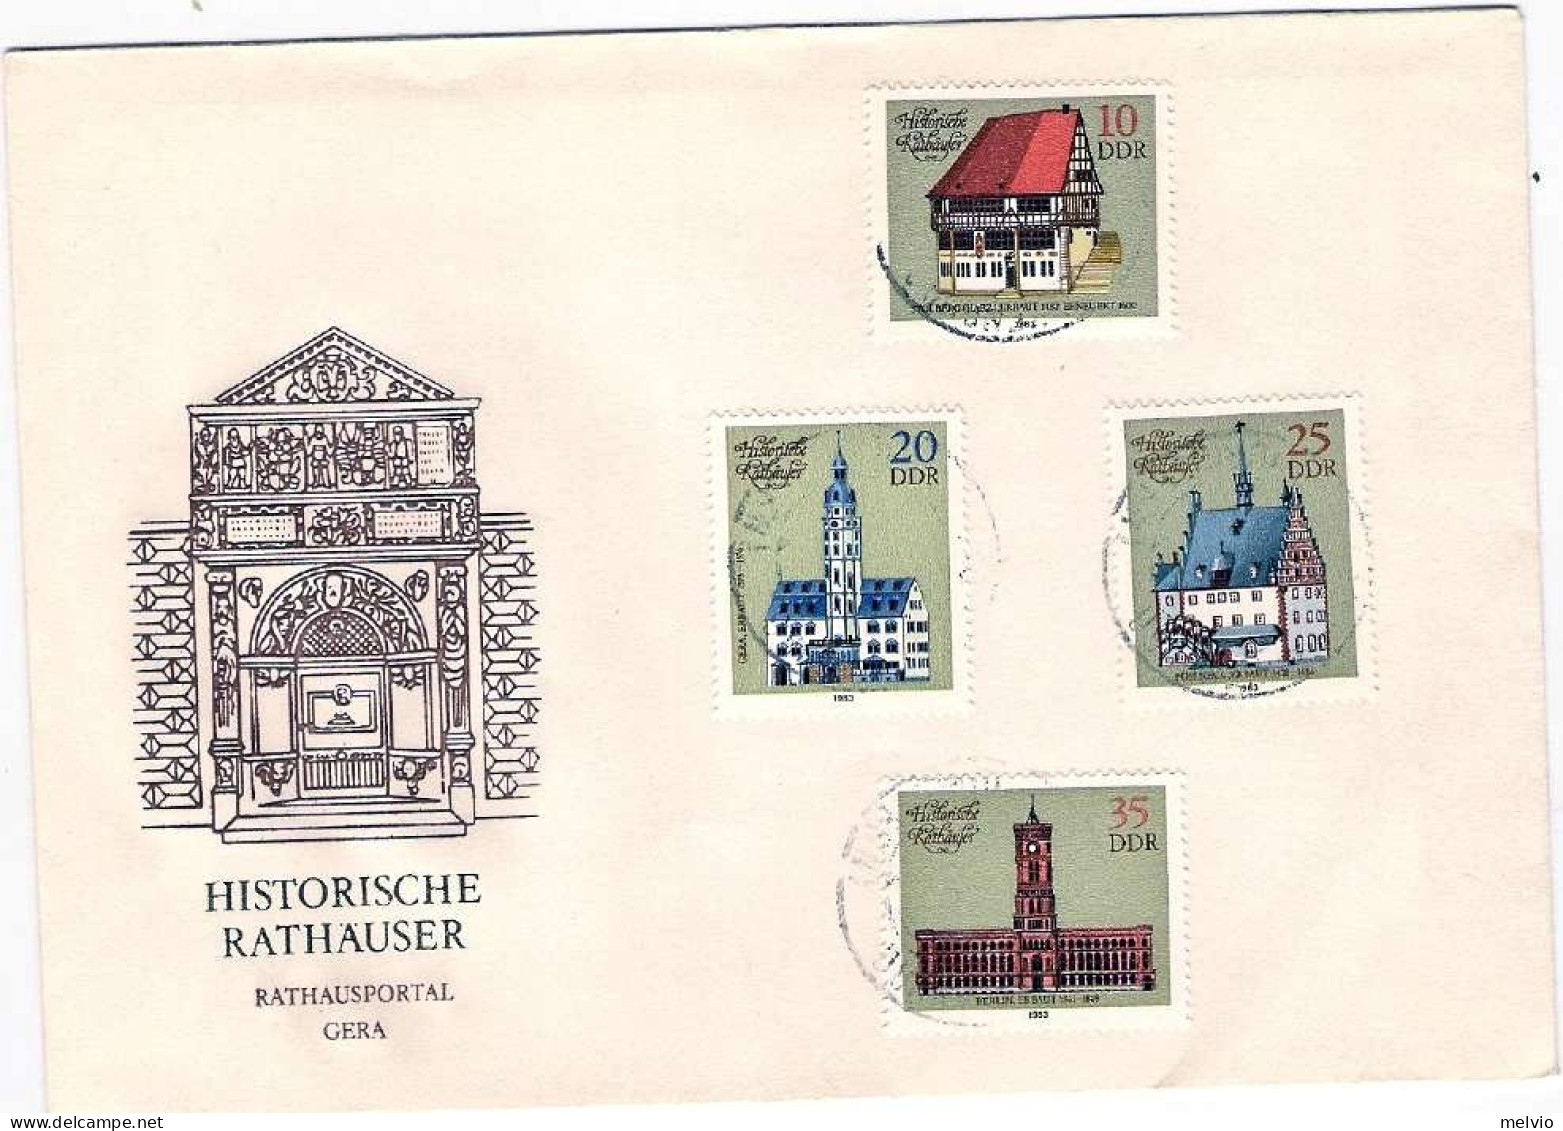 1983-Germania DDR S.4v."Municipi Storici"su Fdc Illustrata, Annullo Di Favore - Lettres & Documents